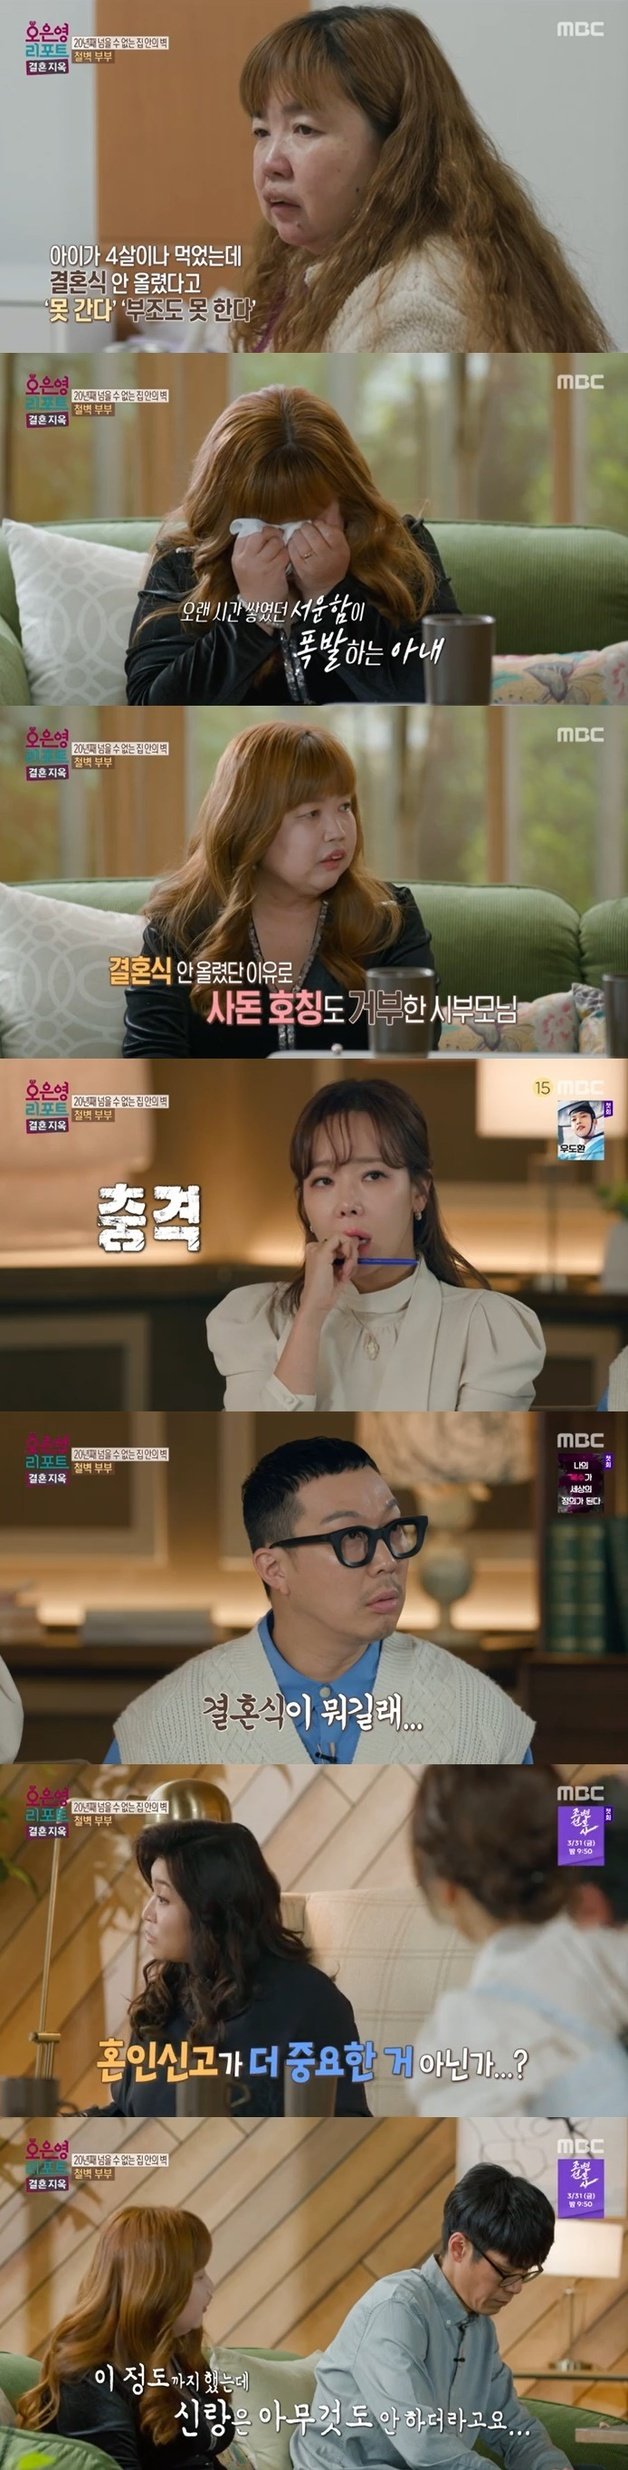 MBC ‘오은영 리포트 - 결혼 지옥’ 캡처